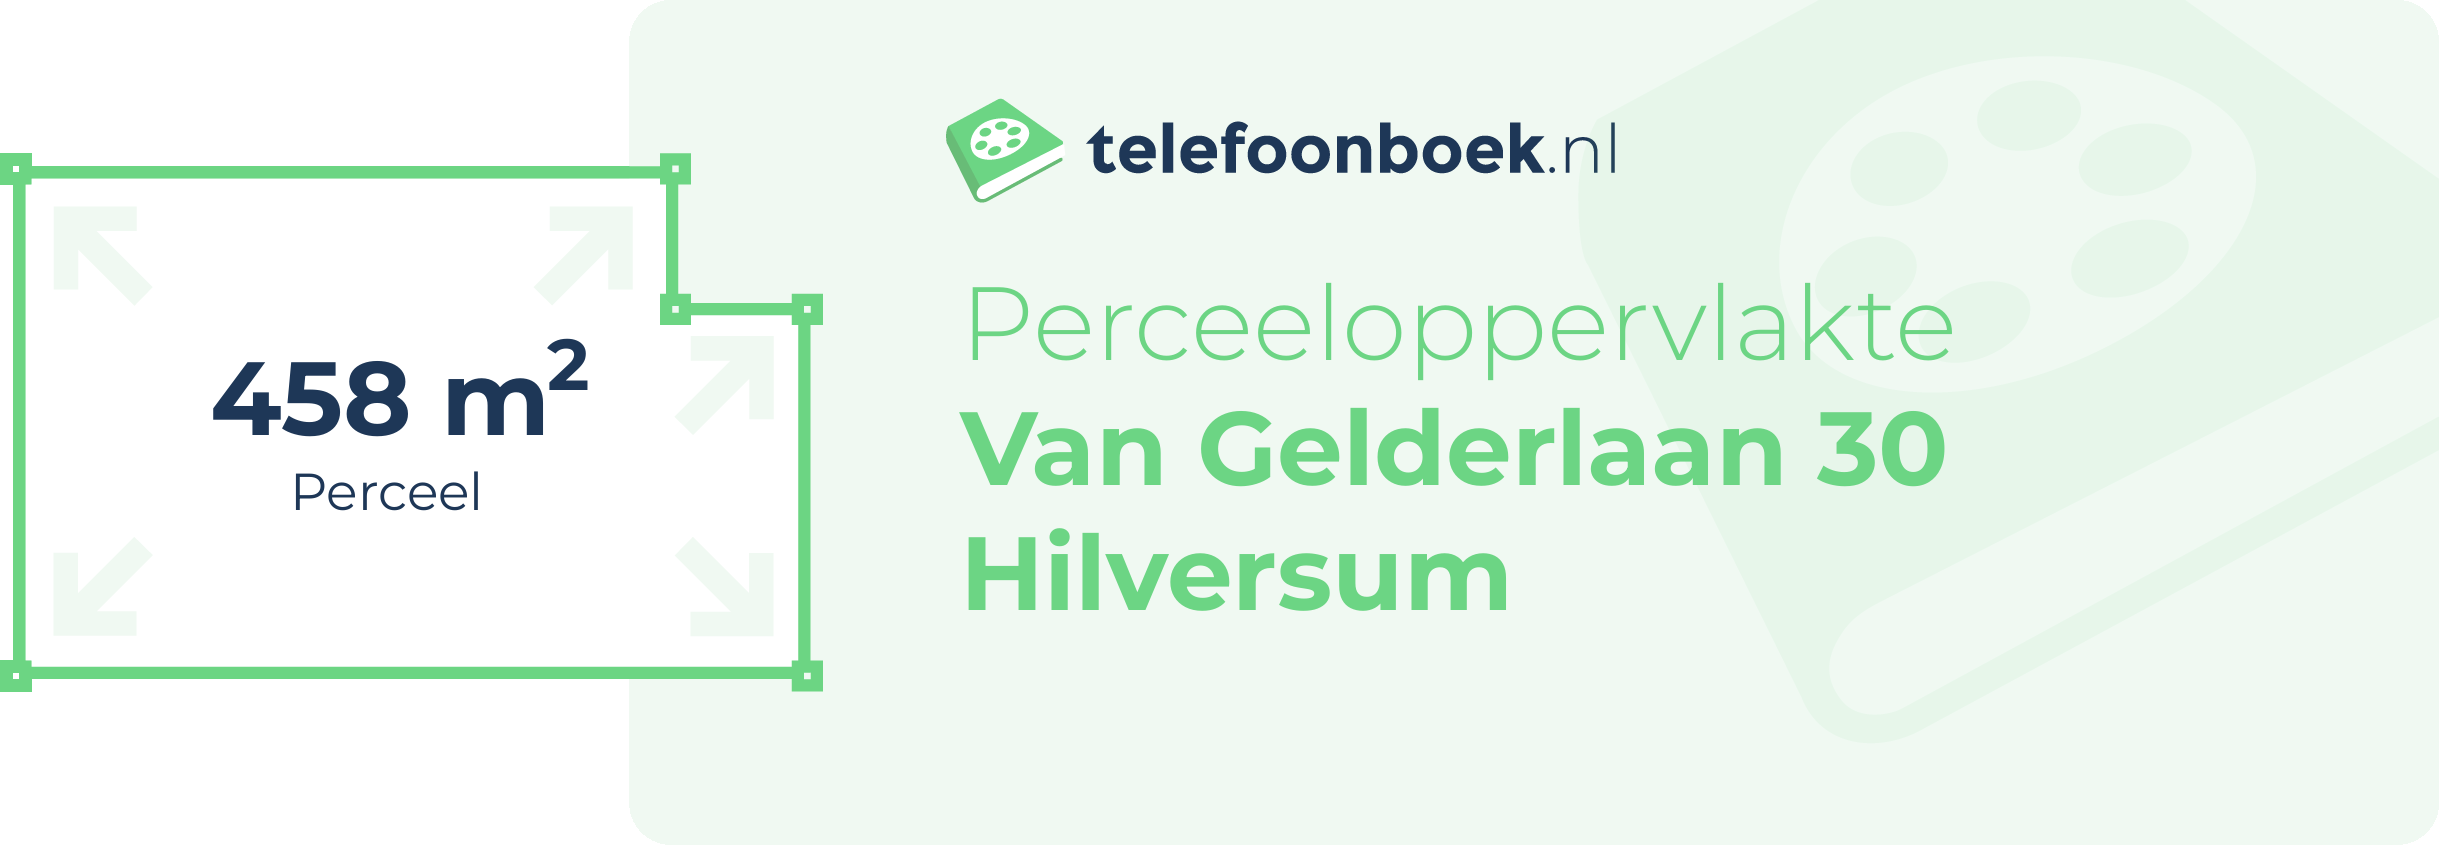 Perceeloppervlakte Van Gelderlaan 30 Hilversum